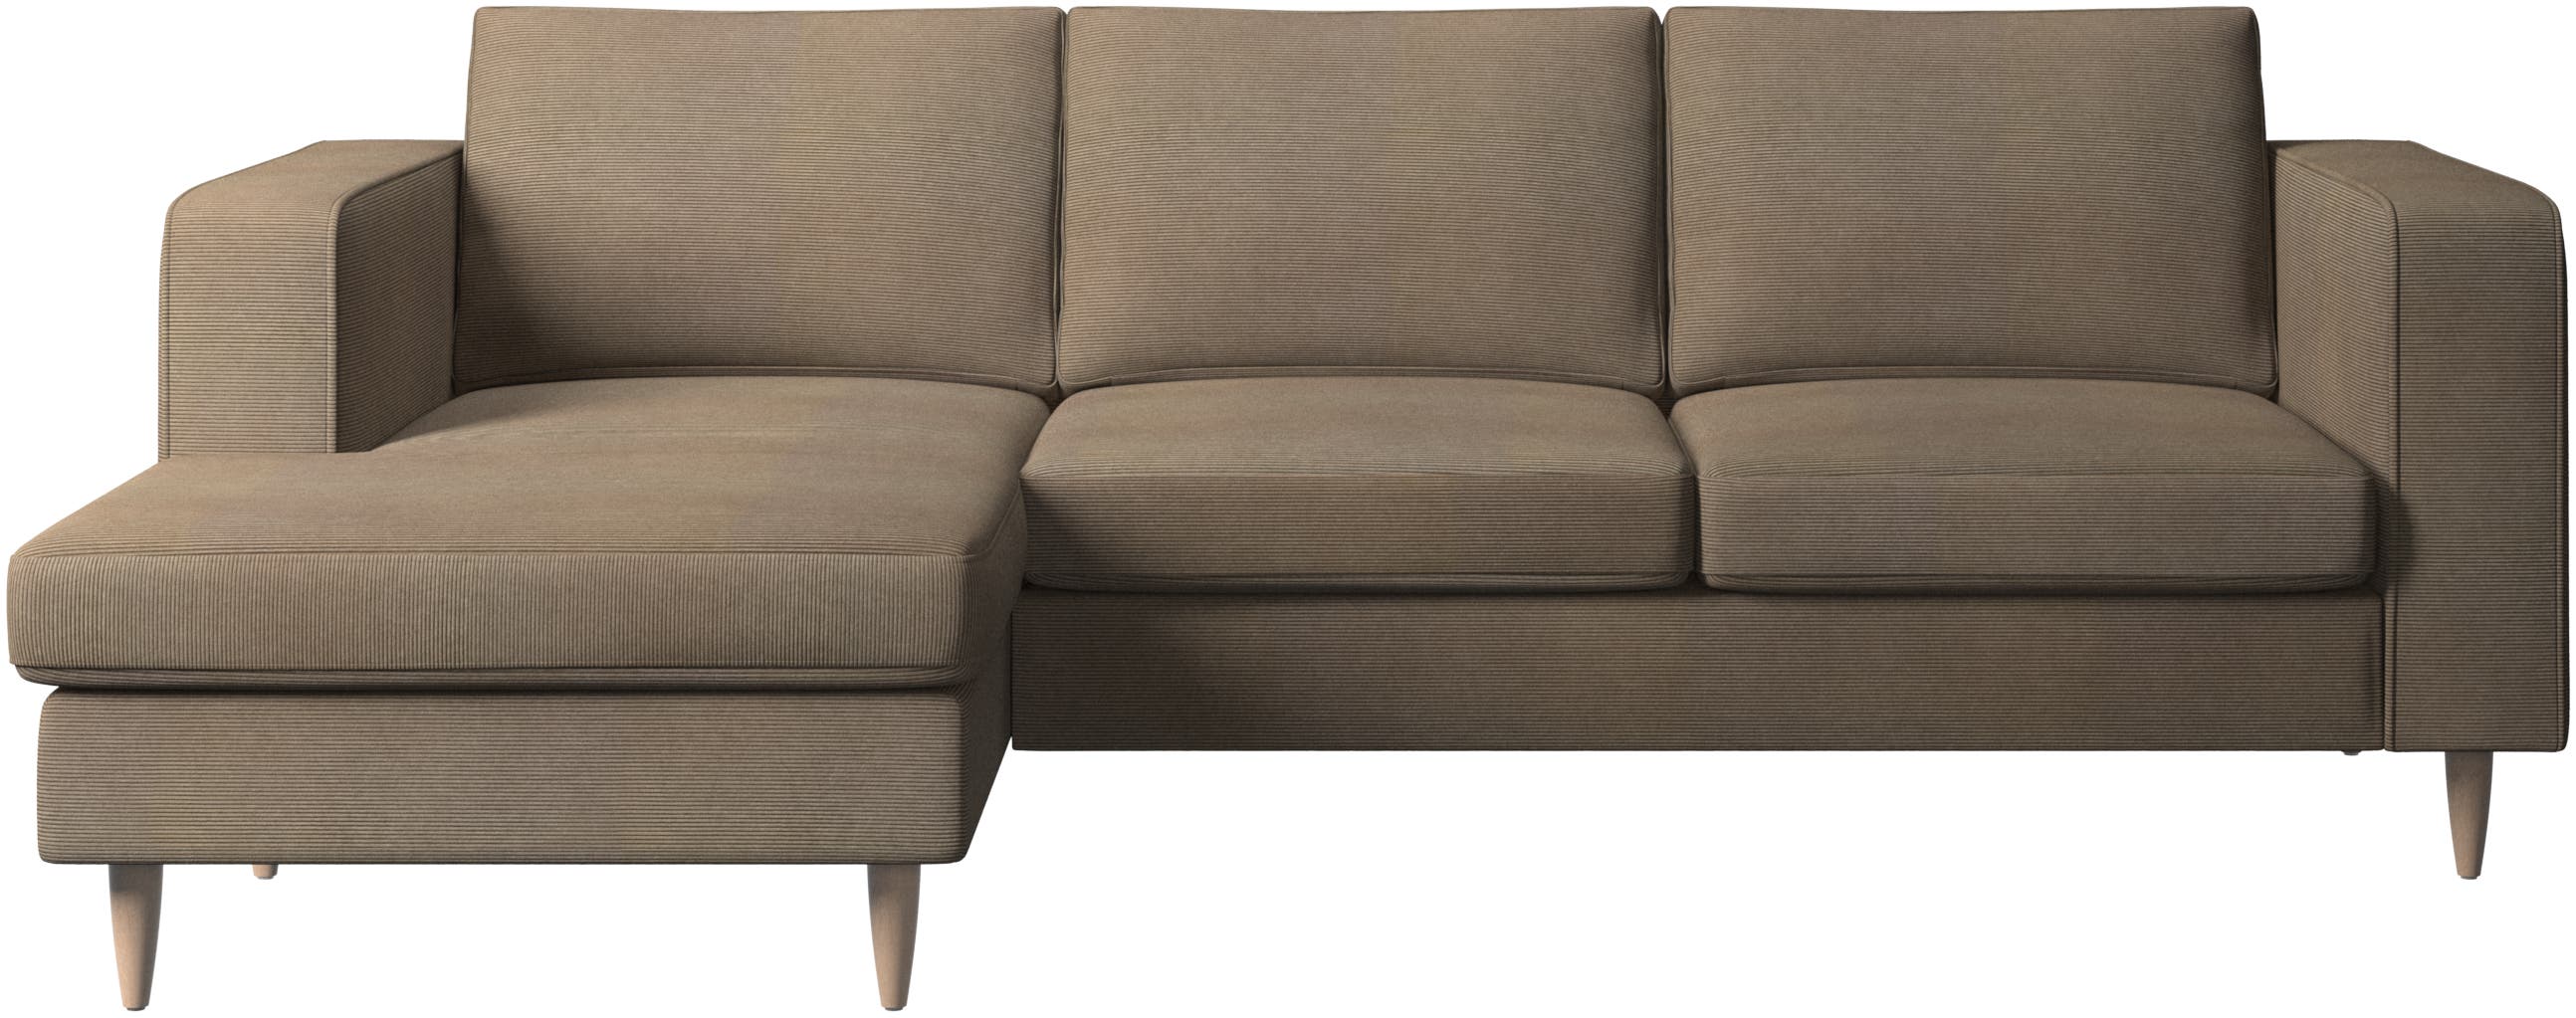 Indivi sofa med hvilemodul